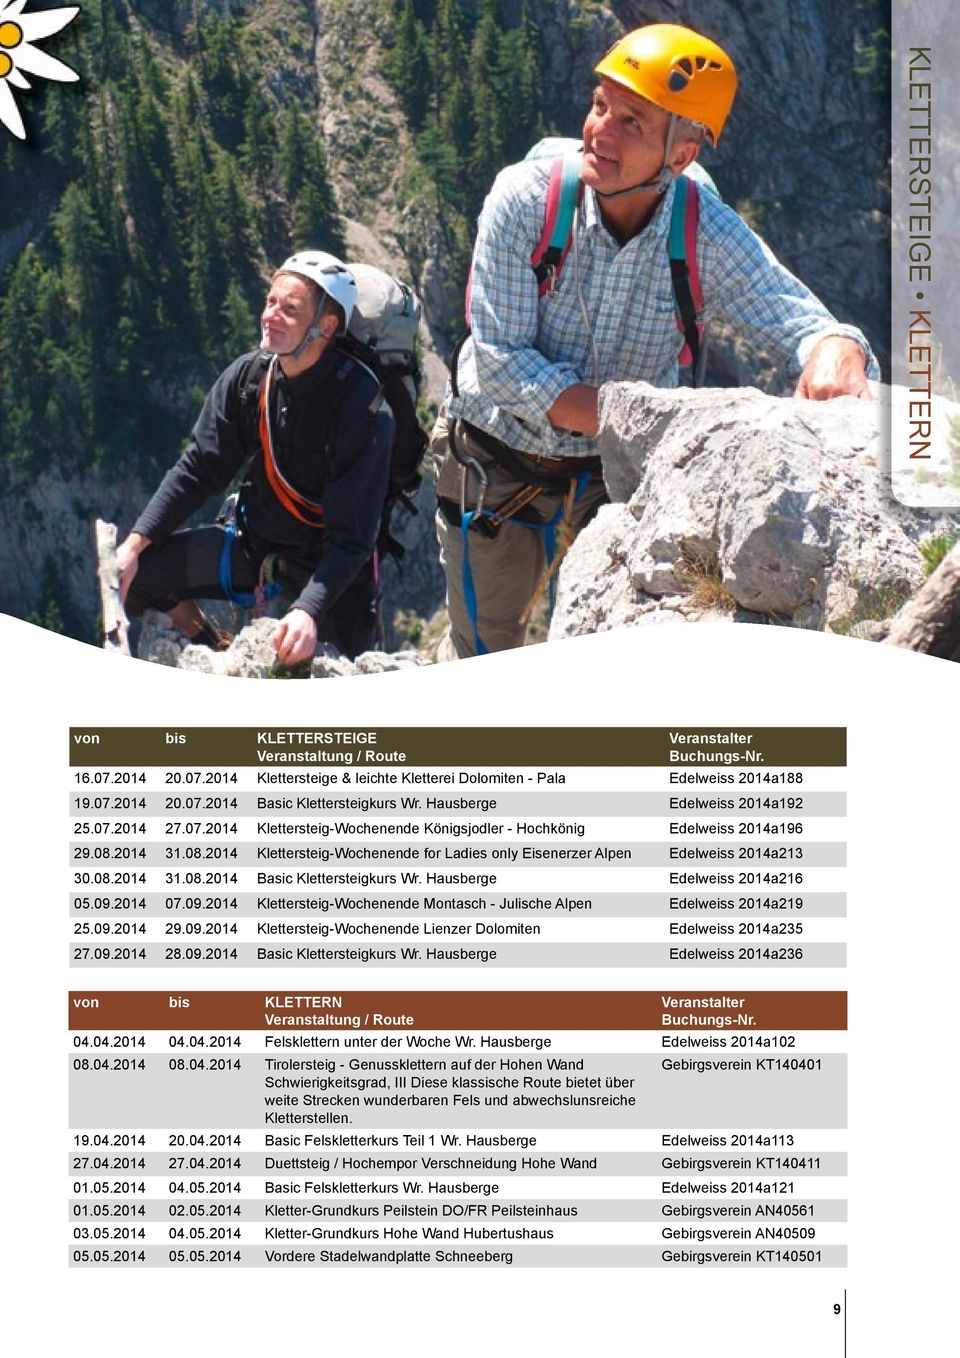 2014 31.08.2014 Klettersteig-Wochenende for Ladies only Eisenerzer Alpen Edelweiss 2014a213 30.08.2014 31.08.2014 Basic Klettersteigkurs Wr. Hausberge Edelweiss 2014a216 05.09.